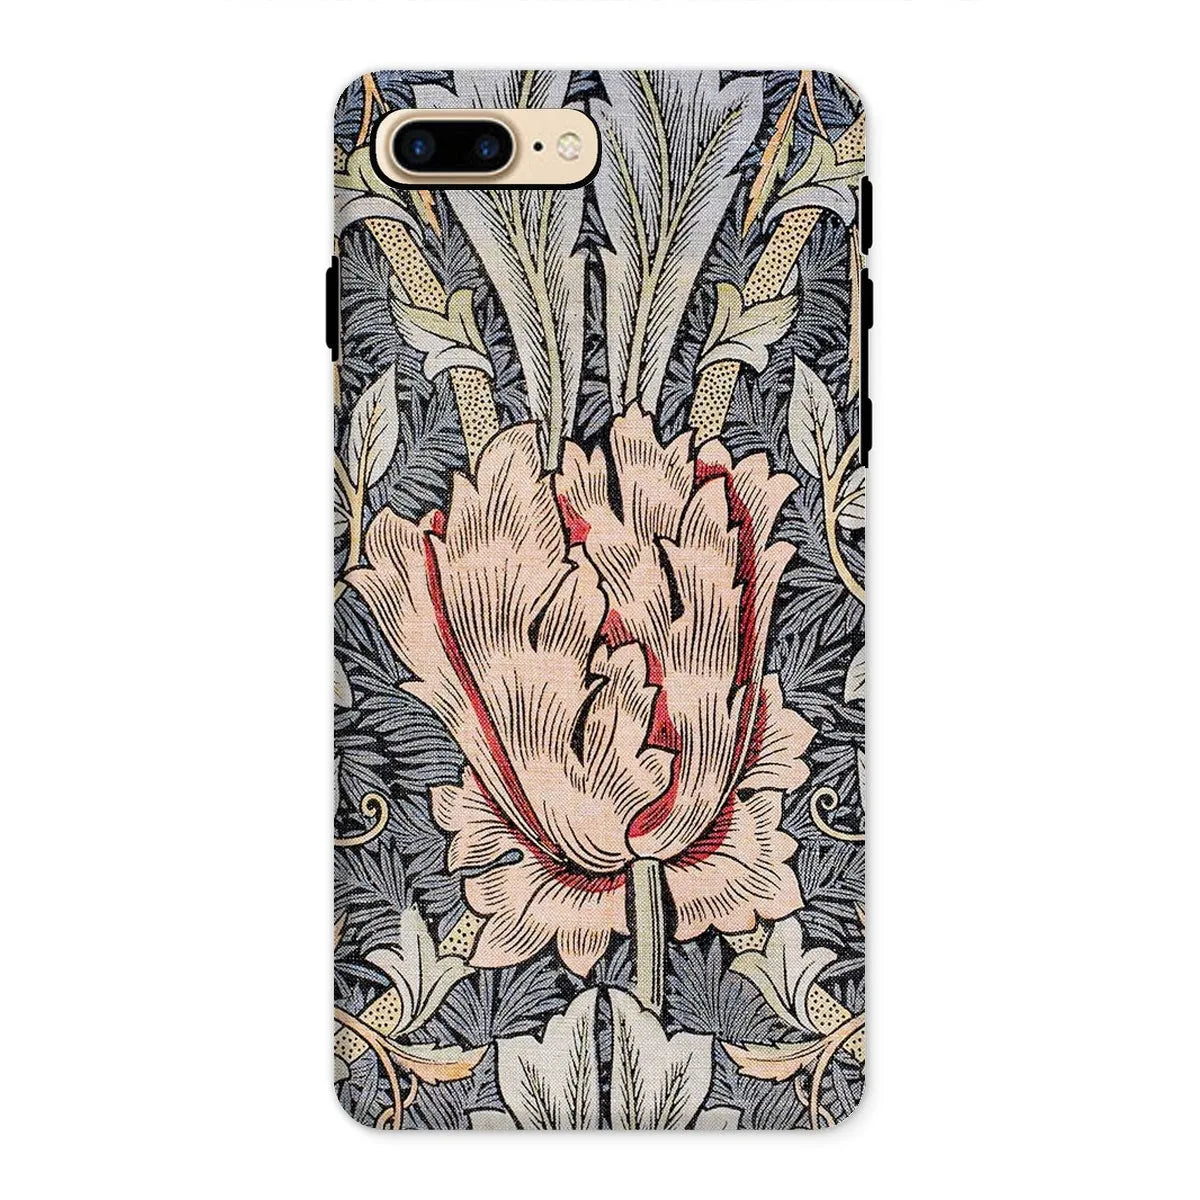 Honeysuckle Arts And Crafts Movement Phone Case - William Morris - Iphone 8 Plus / Matte - Mobile Phone Cases